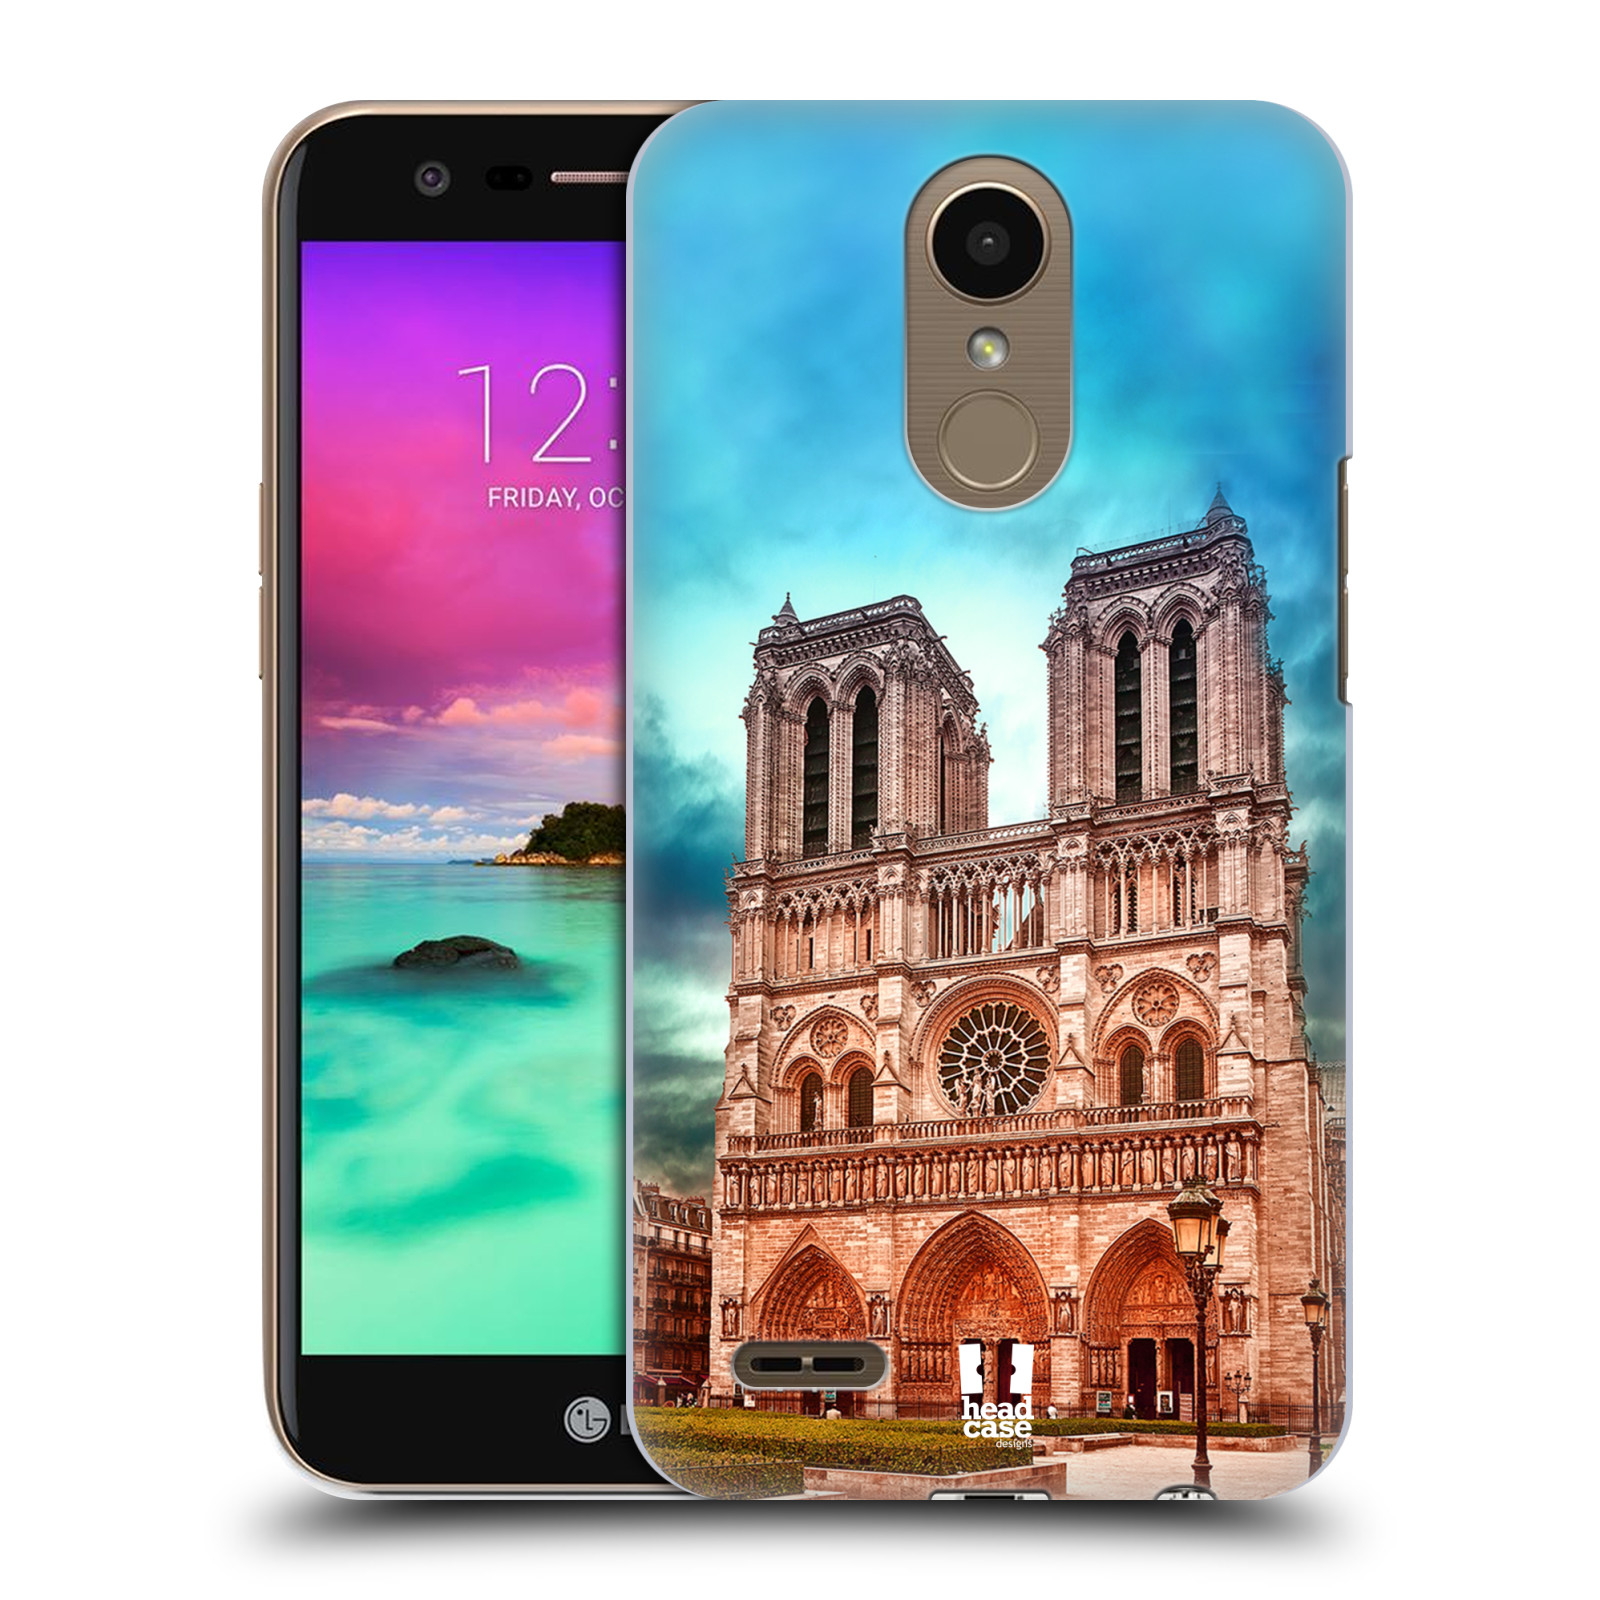 Pouzdro na mobil LG K10 2017 / K10 2017 DUAL SIM - HEAD CASE - historická místa katedrála Notre Dame